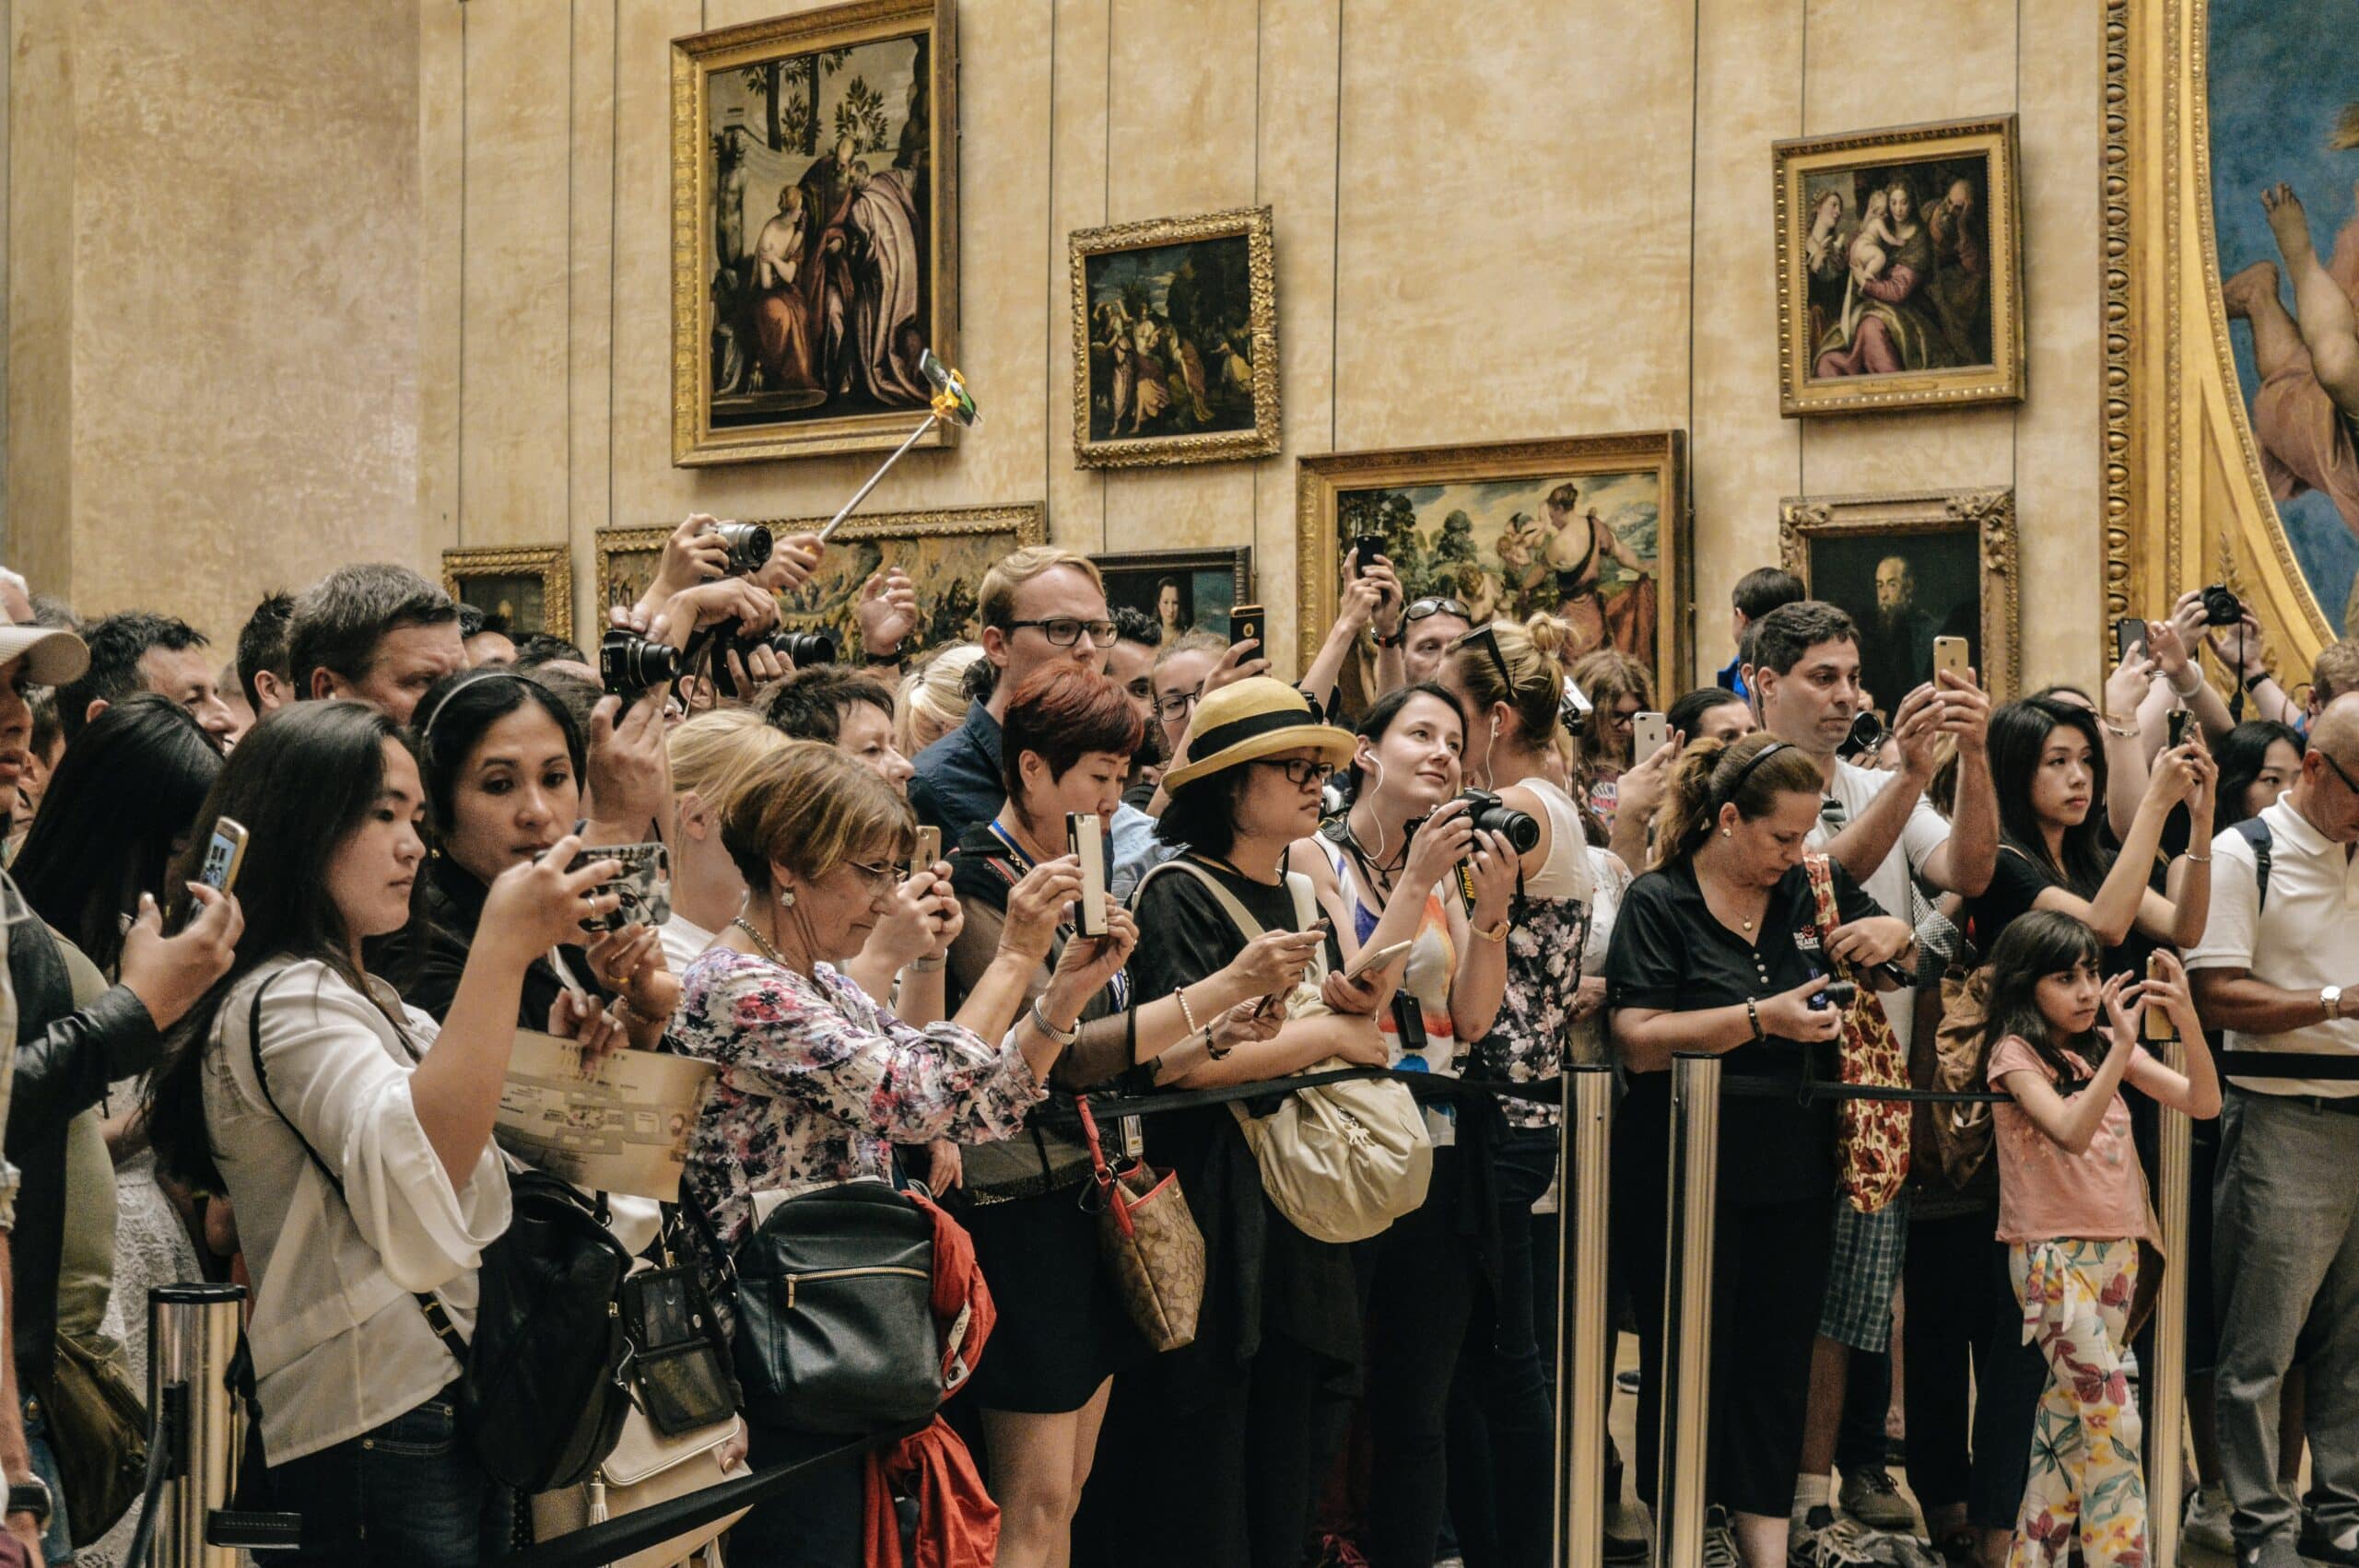 dezenas de pessoas amontadas perto da faixa de contenção em frente ao quadro de Monalisa - que não aparece na imagem - dentro do Museu do Louvre, em Paris. Ao fundo é possível ver outras obras de arte pintadas nos quadros pendurados à parede.